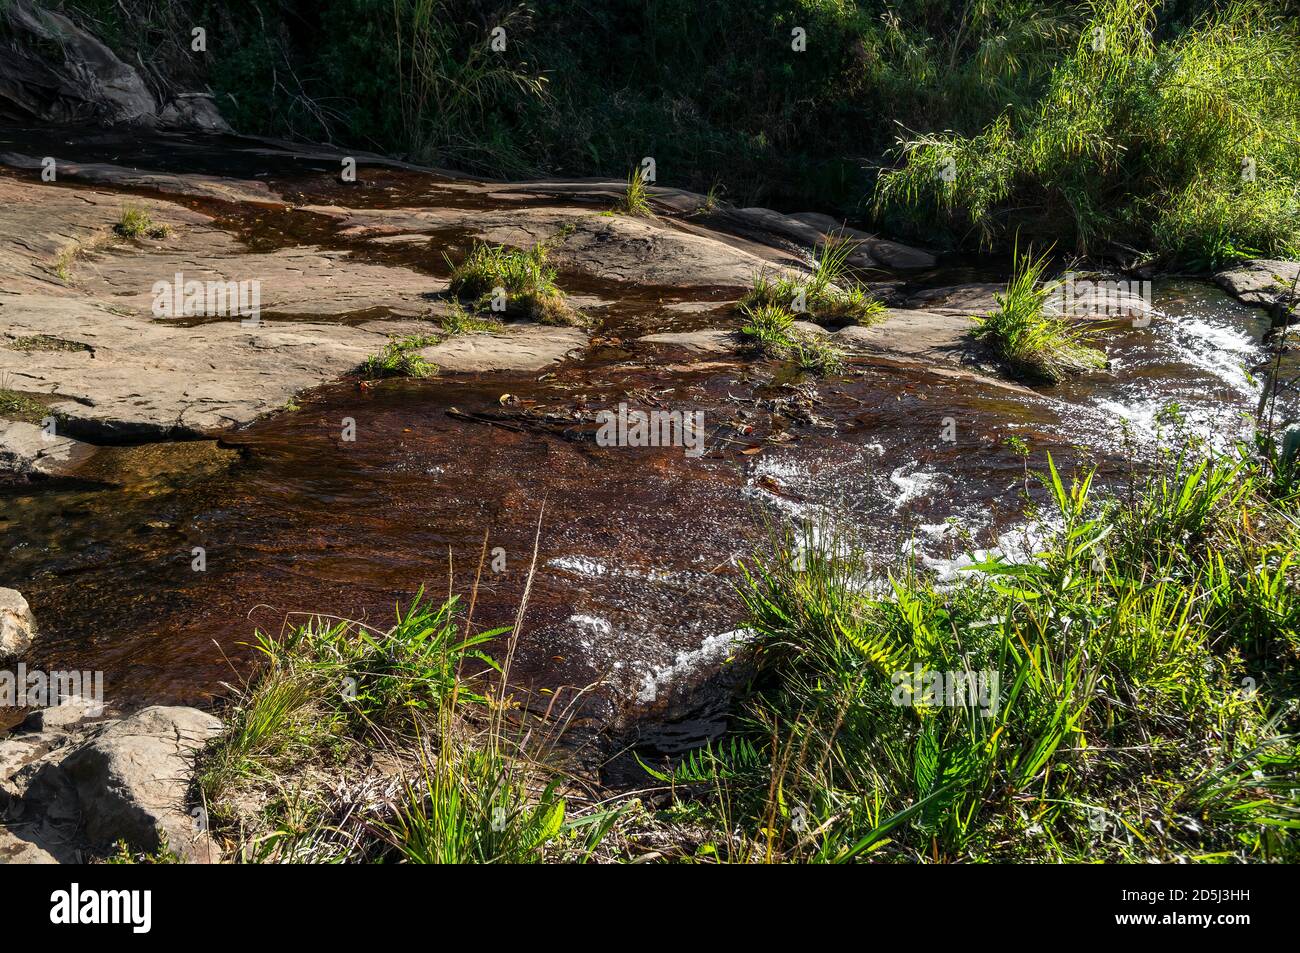 Acque cristalline che scorrono sulle formazioni rocciose della cascata di Mato Limpo circondate da vegetazione verde. Cunha, San Paolo - Brasile. Foto Stock